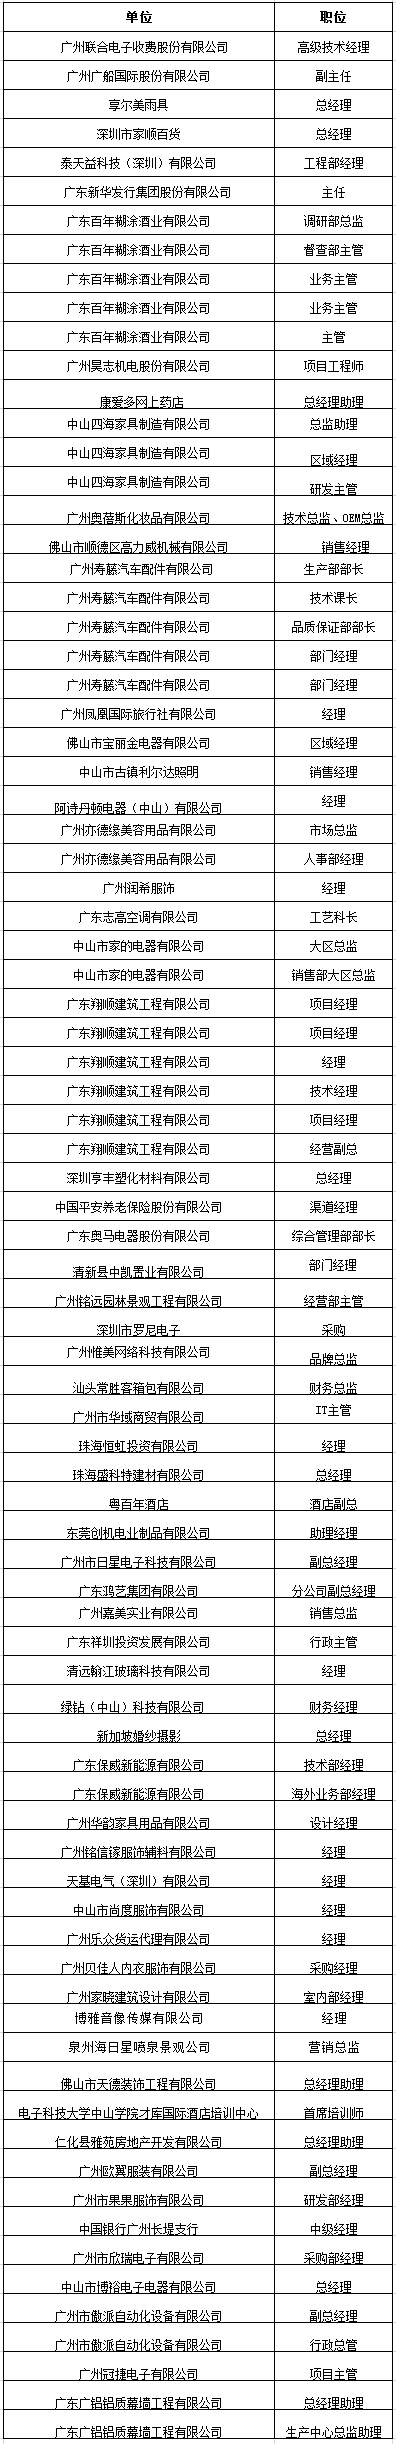 中山大学时代华商教育中心在职经理工商管理高级研修班高级研修班42班学员名录